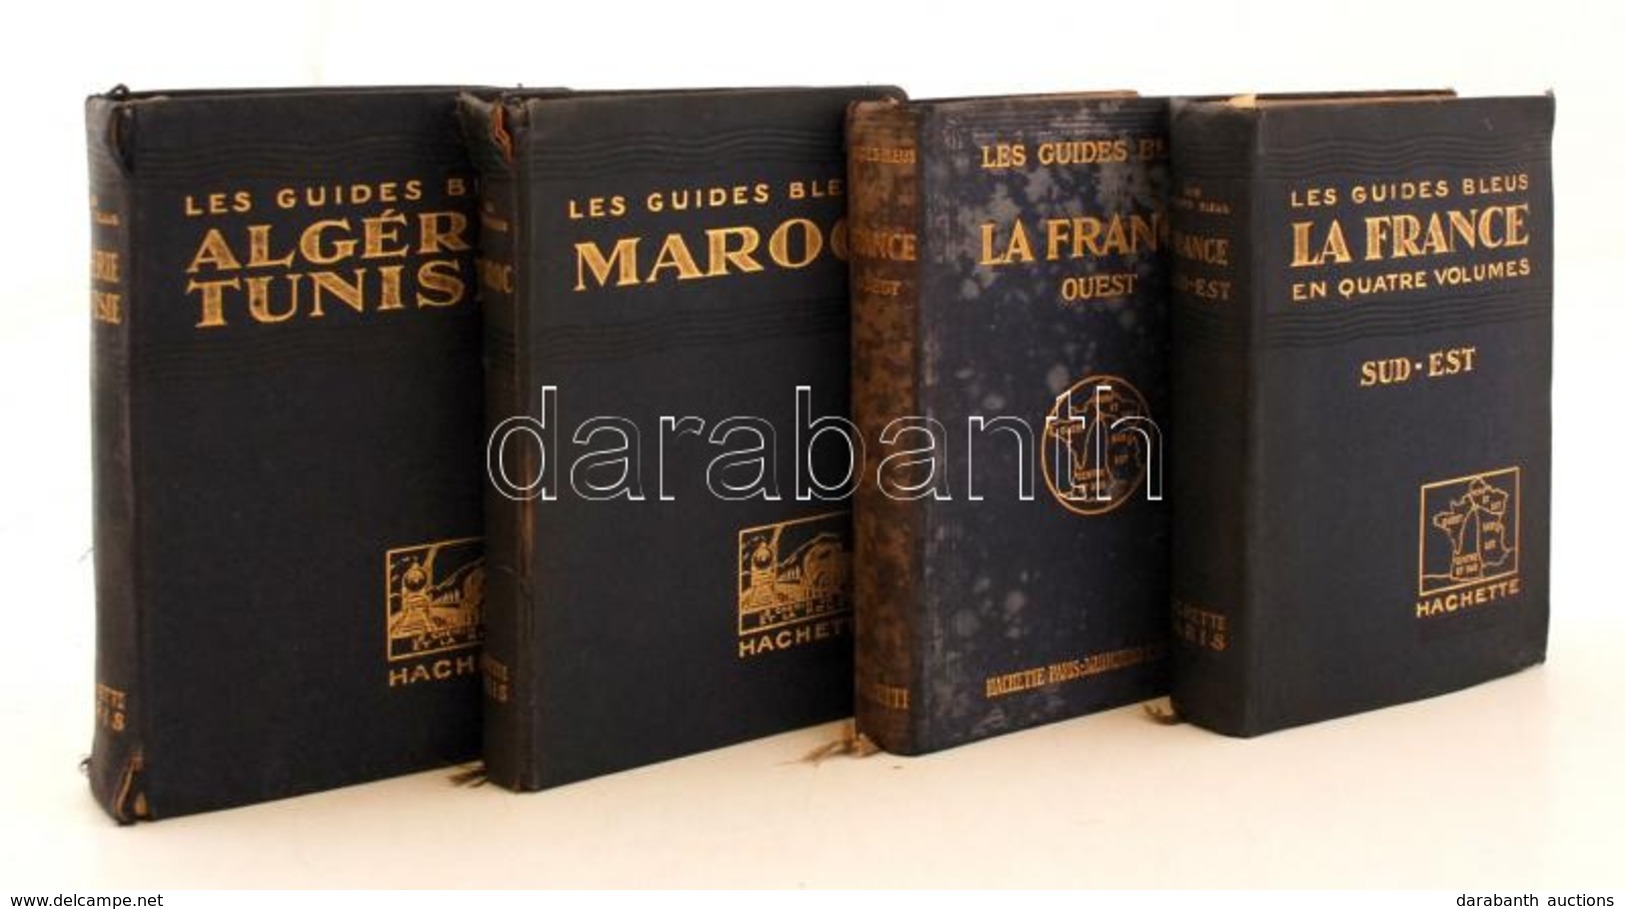 Les Guides Blues Francia Nyelvű útikönyv Sorozat 4 Kötete. (La France - Sud-est, La France - Quest, Maroc, Algérie-Tunis - Zonder Classificatie